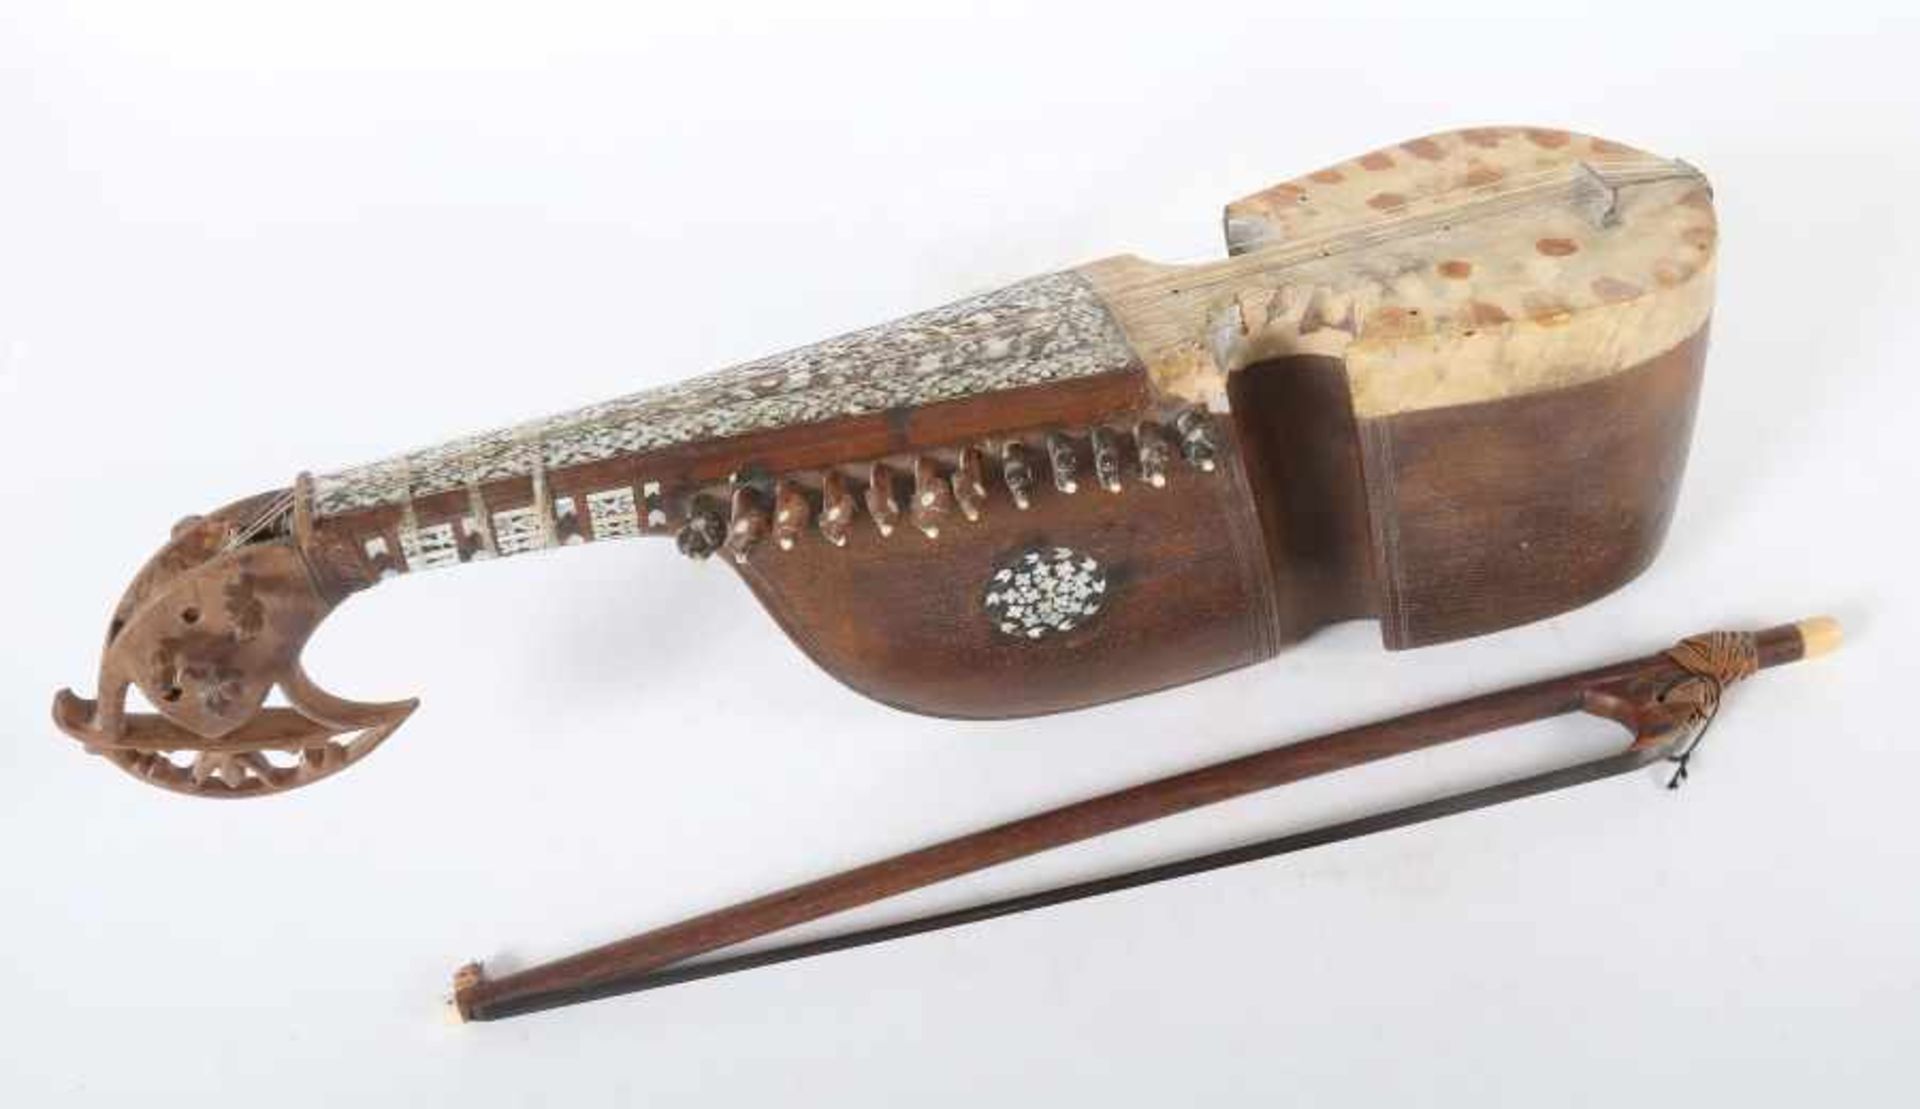 Orientalisches Saiteninstrumentwohl Indopersisch, 20. Jh., Holz/Perlmutt, geschwungener Korpus mit - Bild 2 aus 4